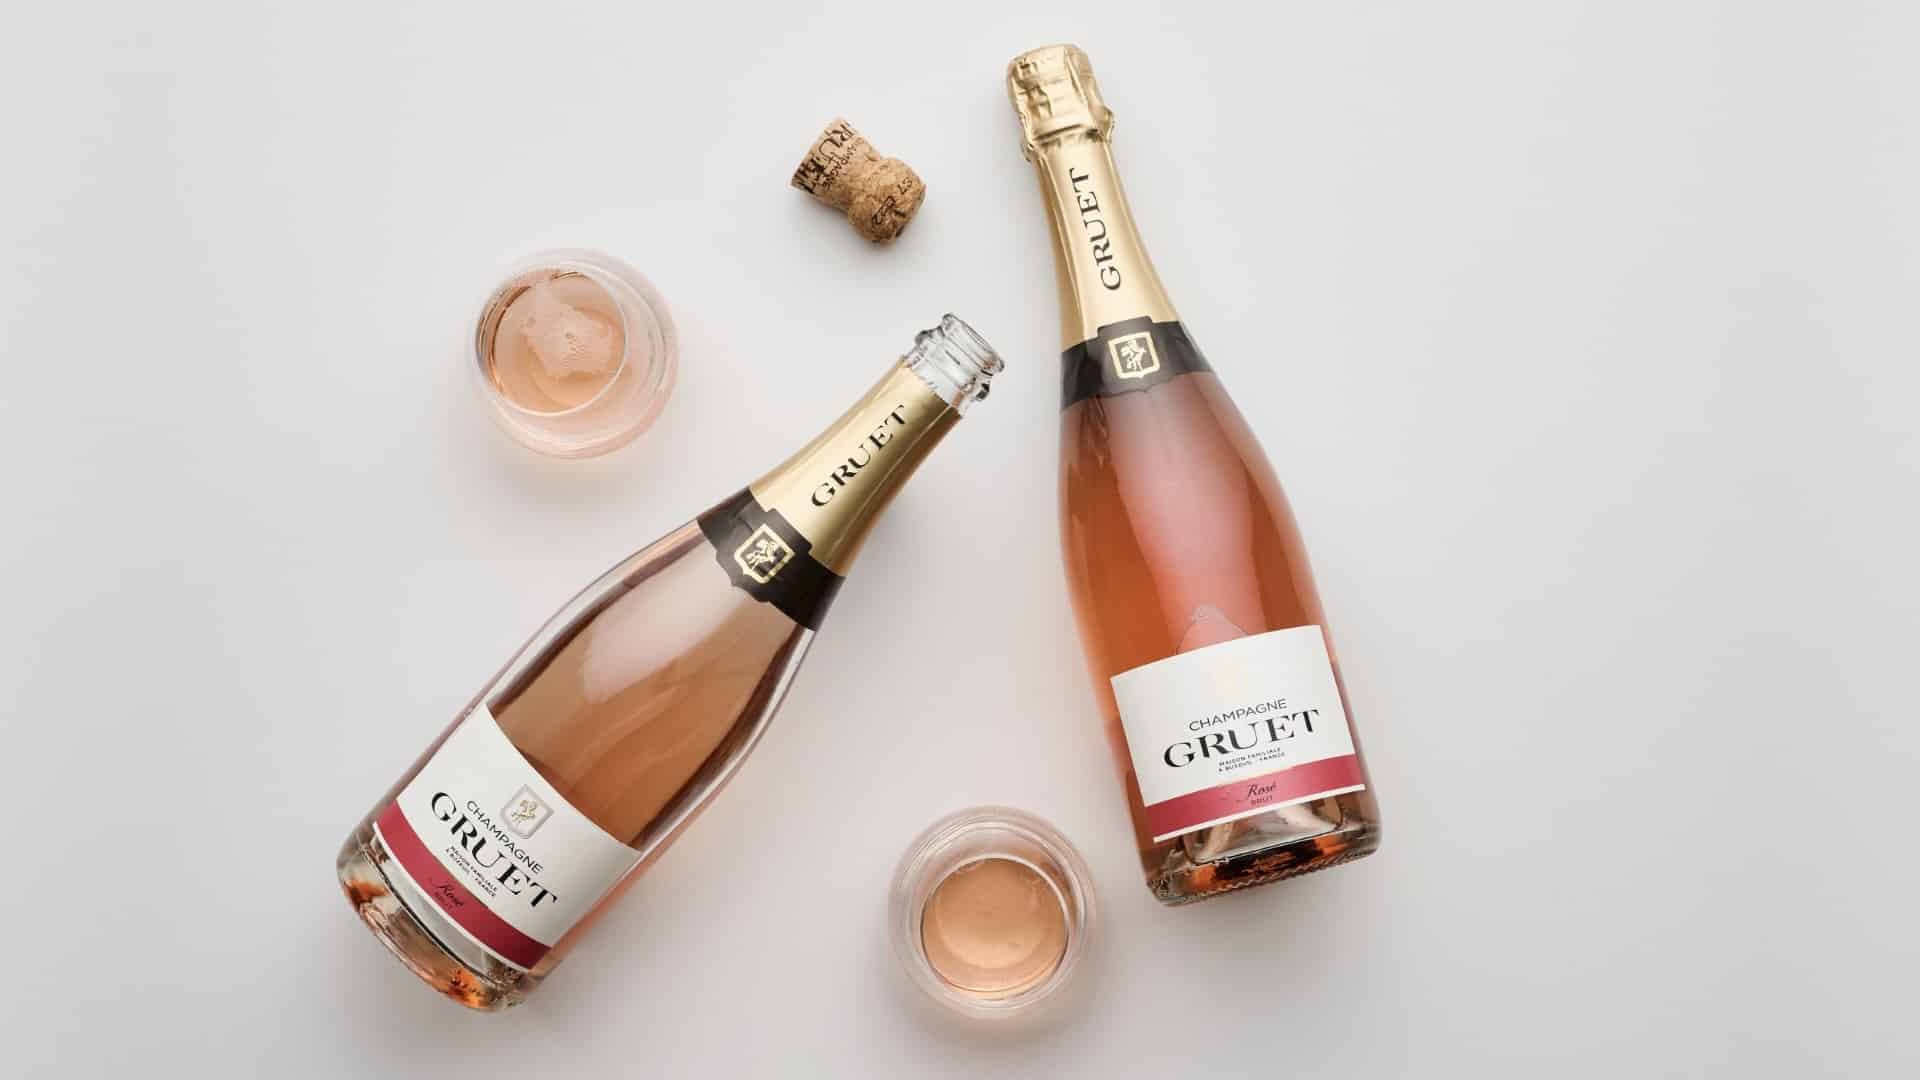 Edelweiss Rose Champagner Gruet Neuheit An Bord